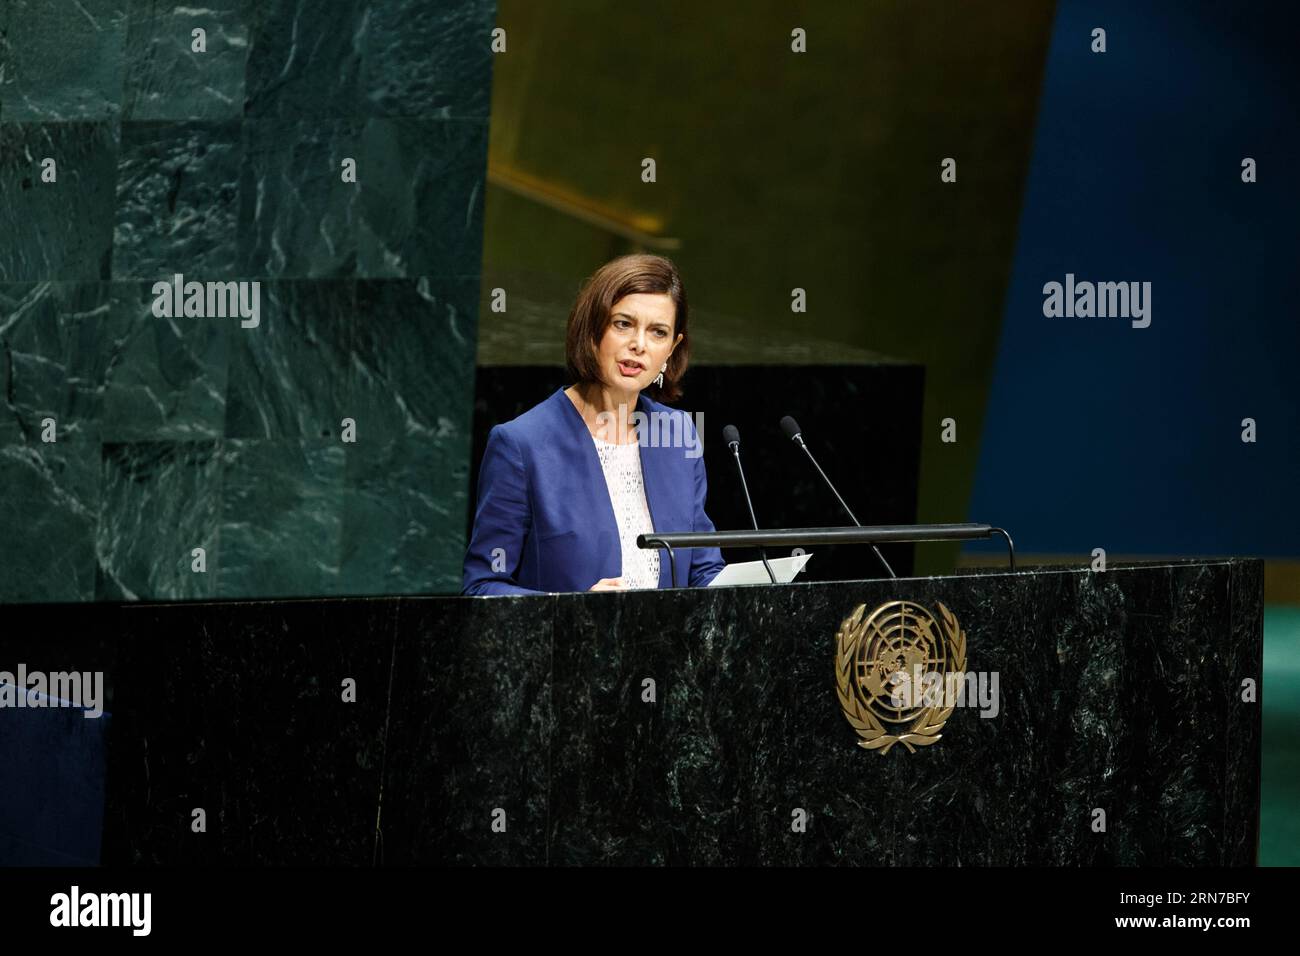 (150902) -- NEW YORK, 2. September 2015 -- Laura Boldrini, Präsidentin der Abgeordnetenkammer Italiens, spricht am letzten Tag der Vierten Weltkonferenz der Parlamentssprecher im Hauptquartier der Vereinten Nationen in New York, USA, am 2. September 2015. Insgesamt nehmen 138 Referenten der nationalen Parlamente und 39 stellvertretende Referenten aus rund 140 Ländern, darunter China, an der Konferenz Teil, die hier am Montag begann und bis zum 2. September läuft. ) UN-NEW YORK-KONFERENZ DER PARLAMENTSPRÄSIDENTEN LixMuzi PUBLICATIONxNOTxINxCHN 150902 New York 2. September 2015 Laura Boldrini Stockfoto